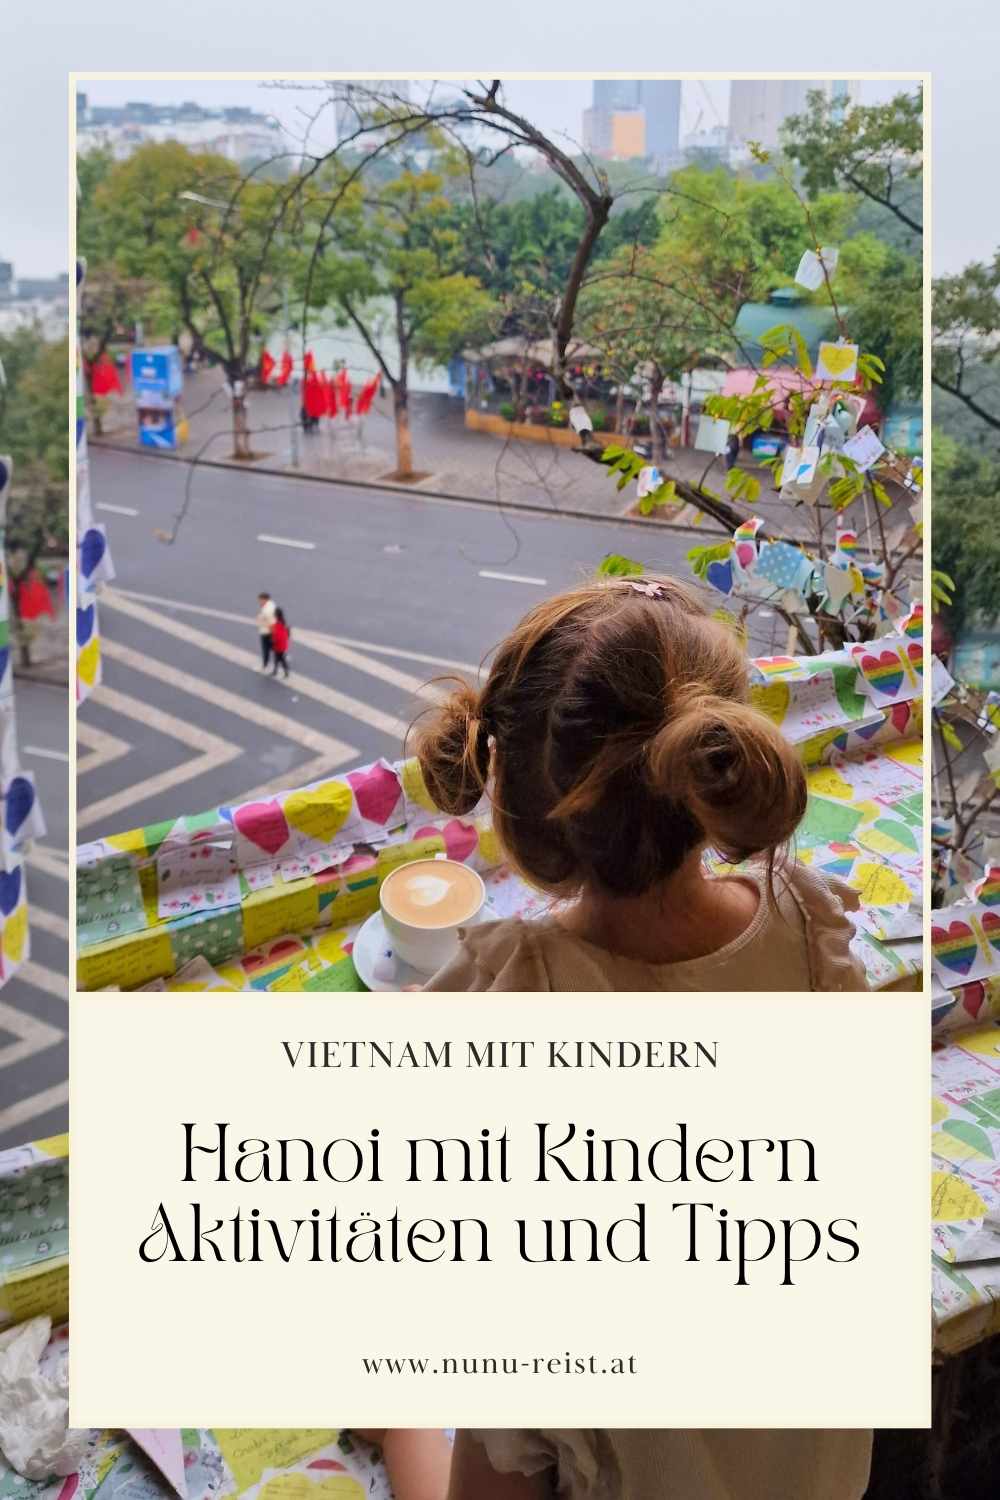 Vietnam mit Kindern Hanoi Aktivitäten und Tipps